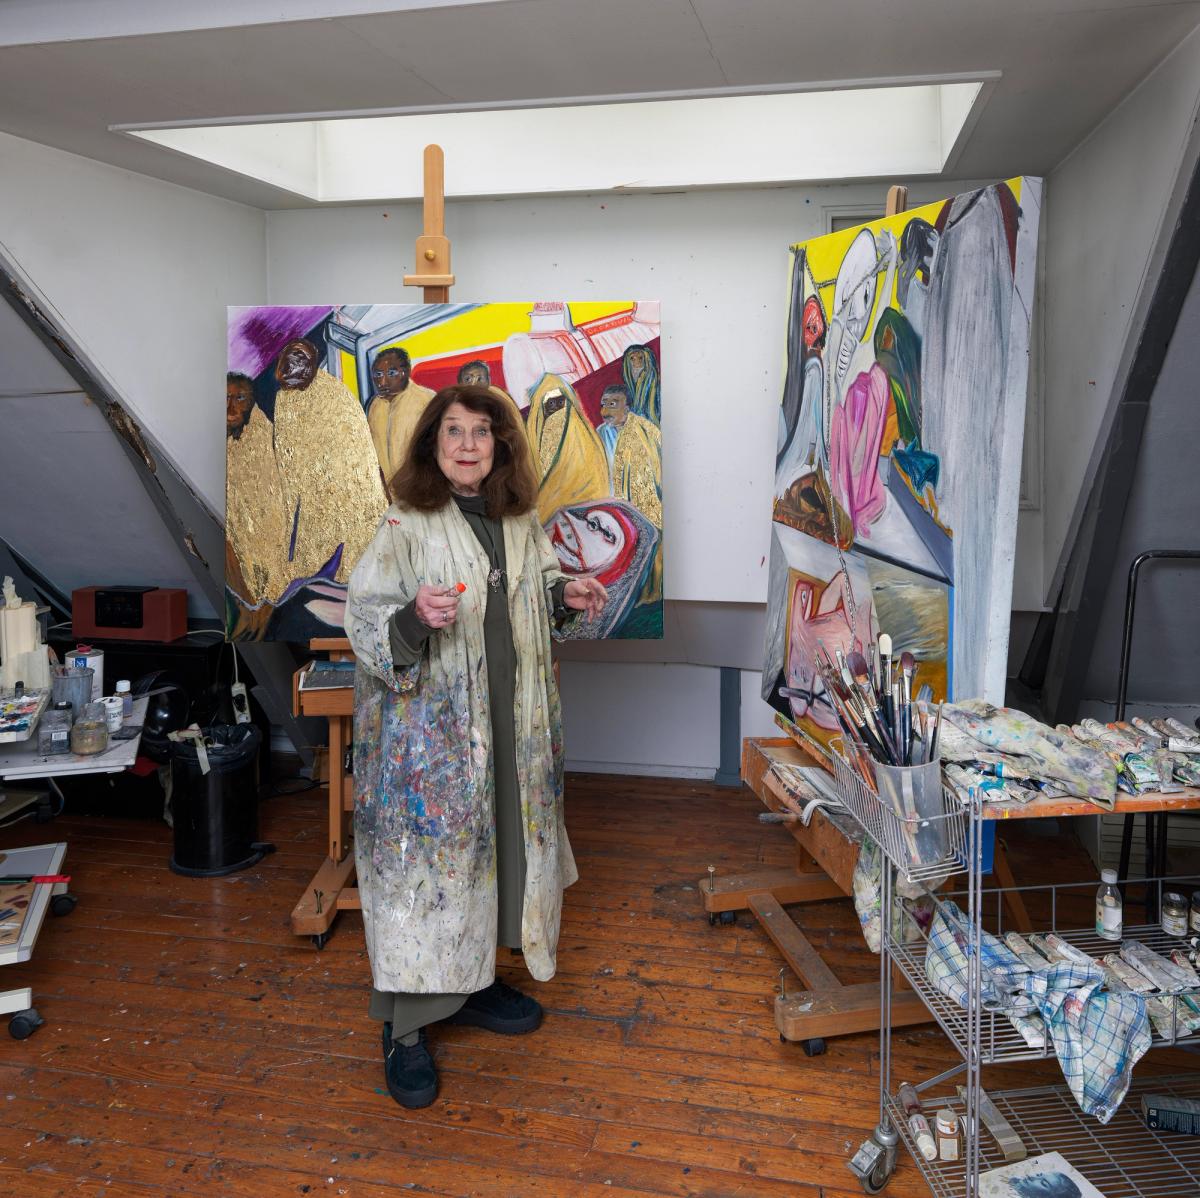 Jacqueline de Jong in her studio Photo by Gert Jan van Rooij. Image courtesy of Pippy Houldsworth Gallery